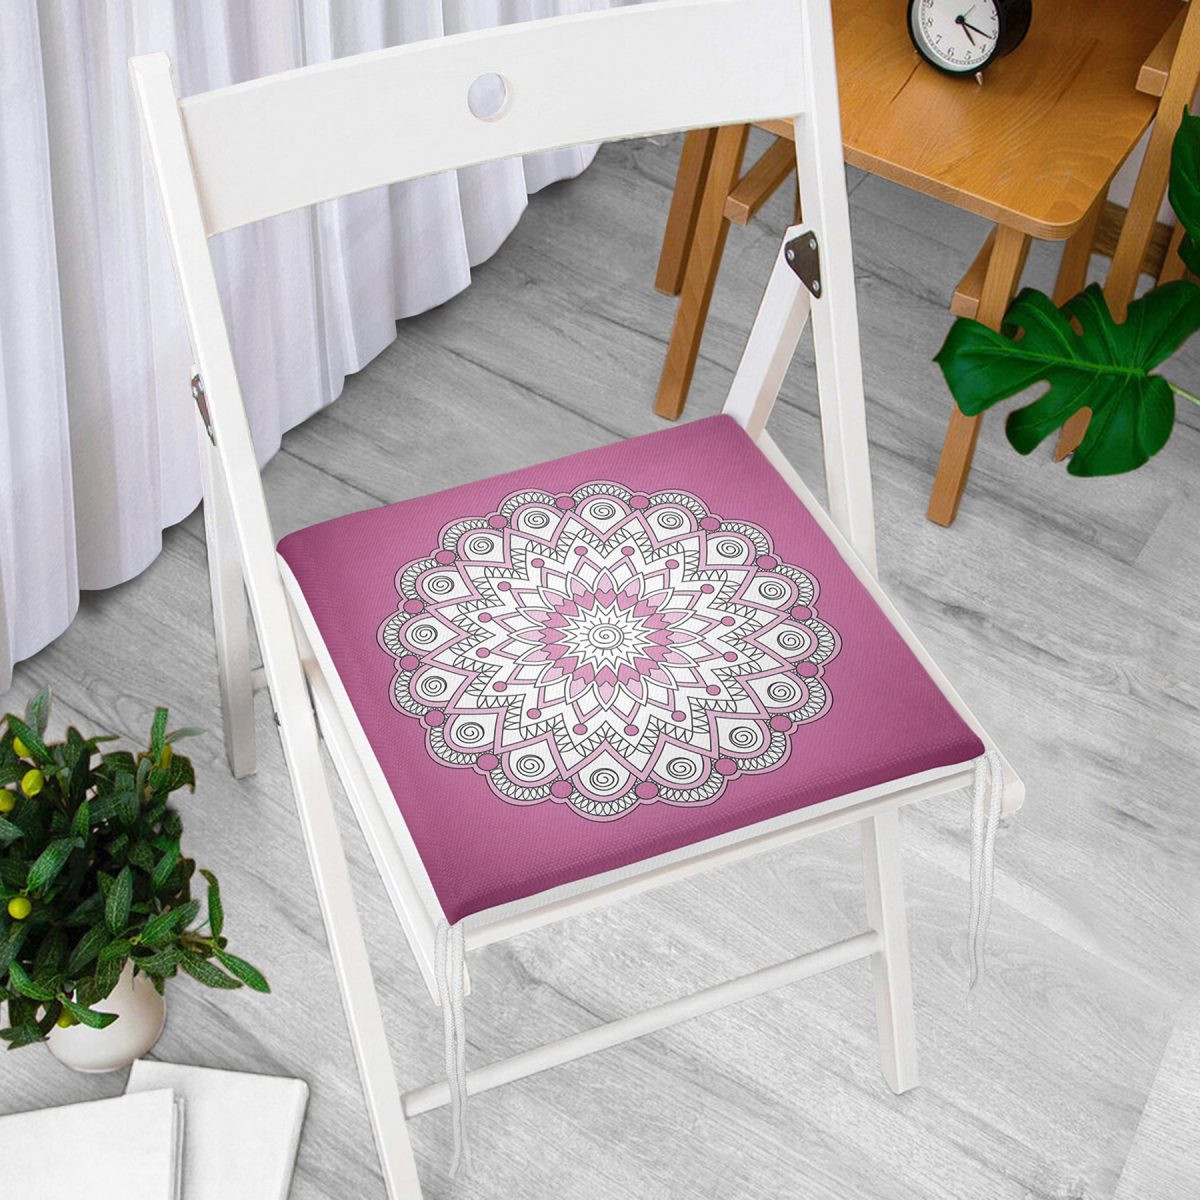 Pembe Zeminde Beyaz Mandala Desenli Özel Tasarım Fermuarlı Sandalye Minderi Realhomes